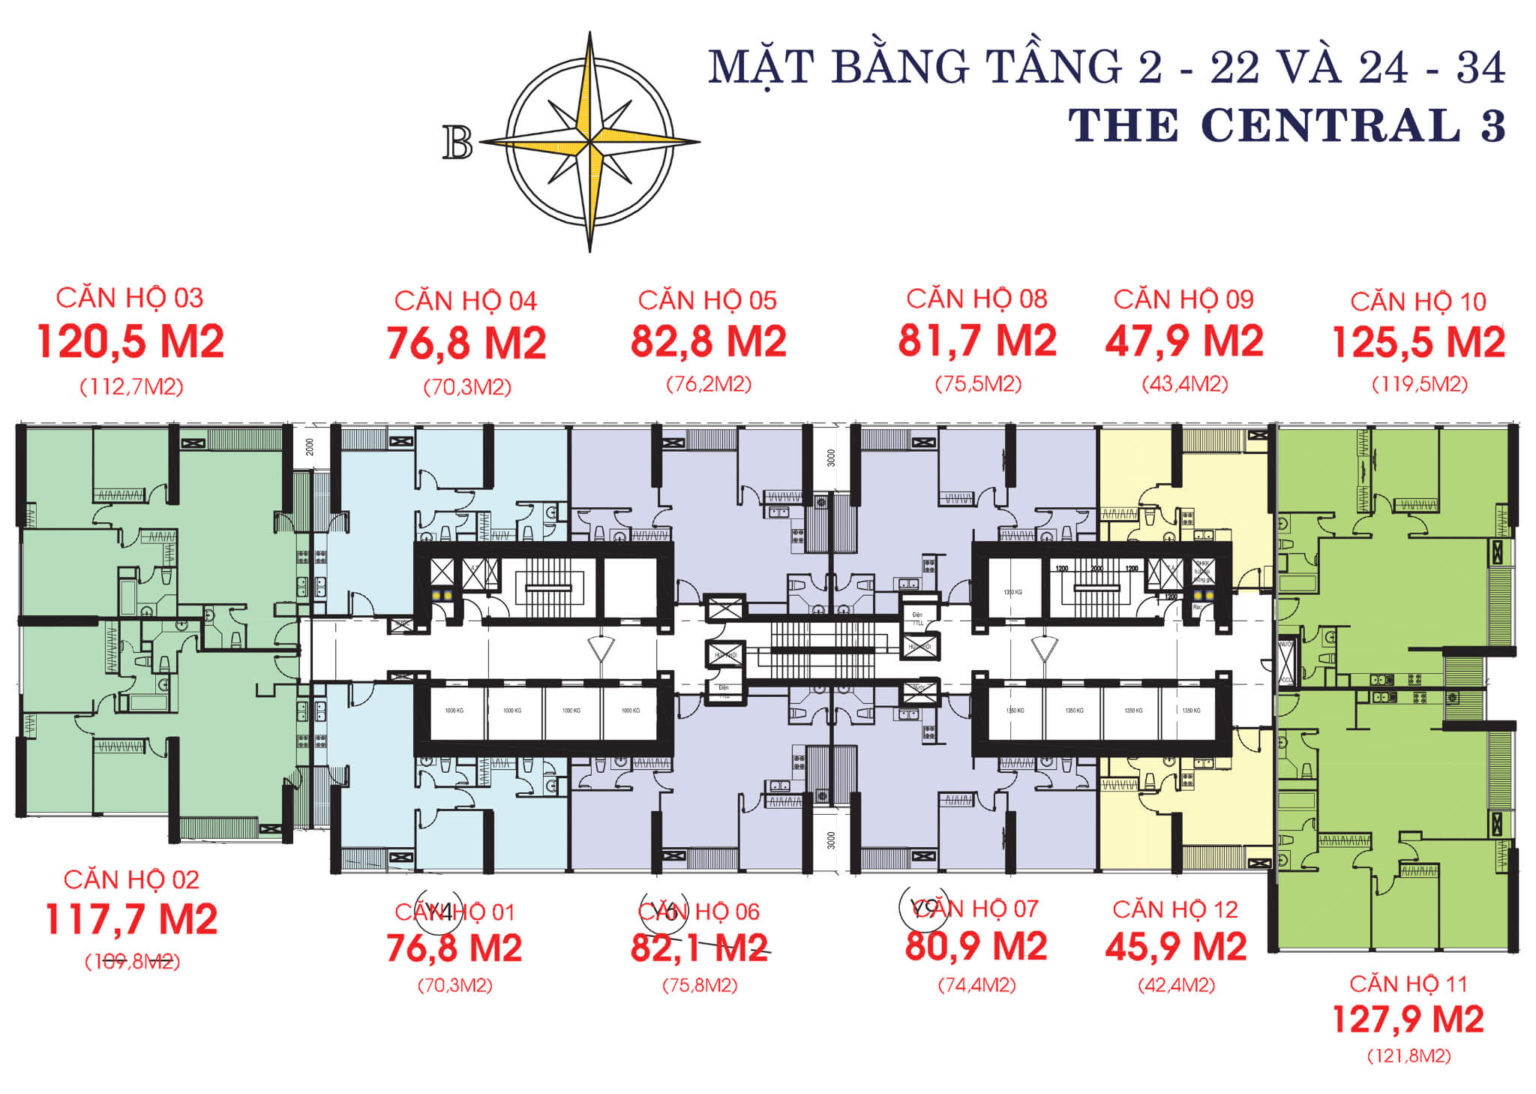 202301/01/08/211933-mat-bang-layout-central-c3-tang-2-34-1536x1094.jpg